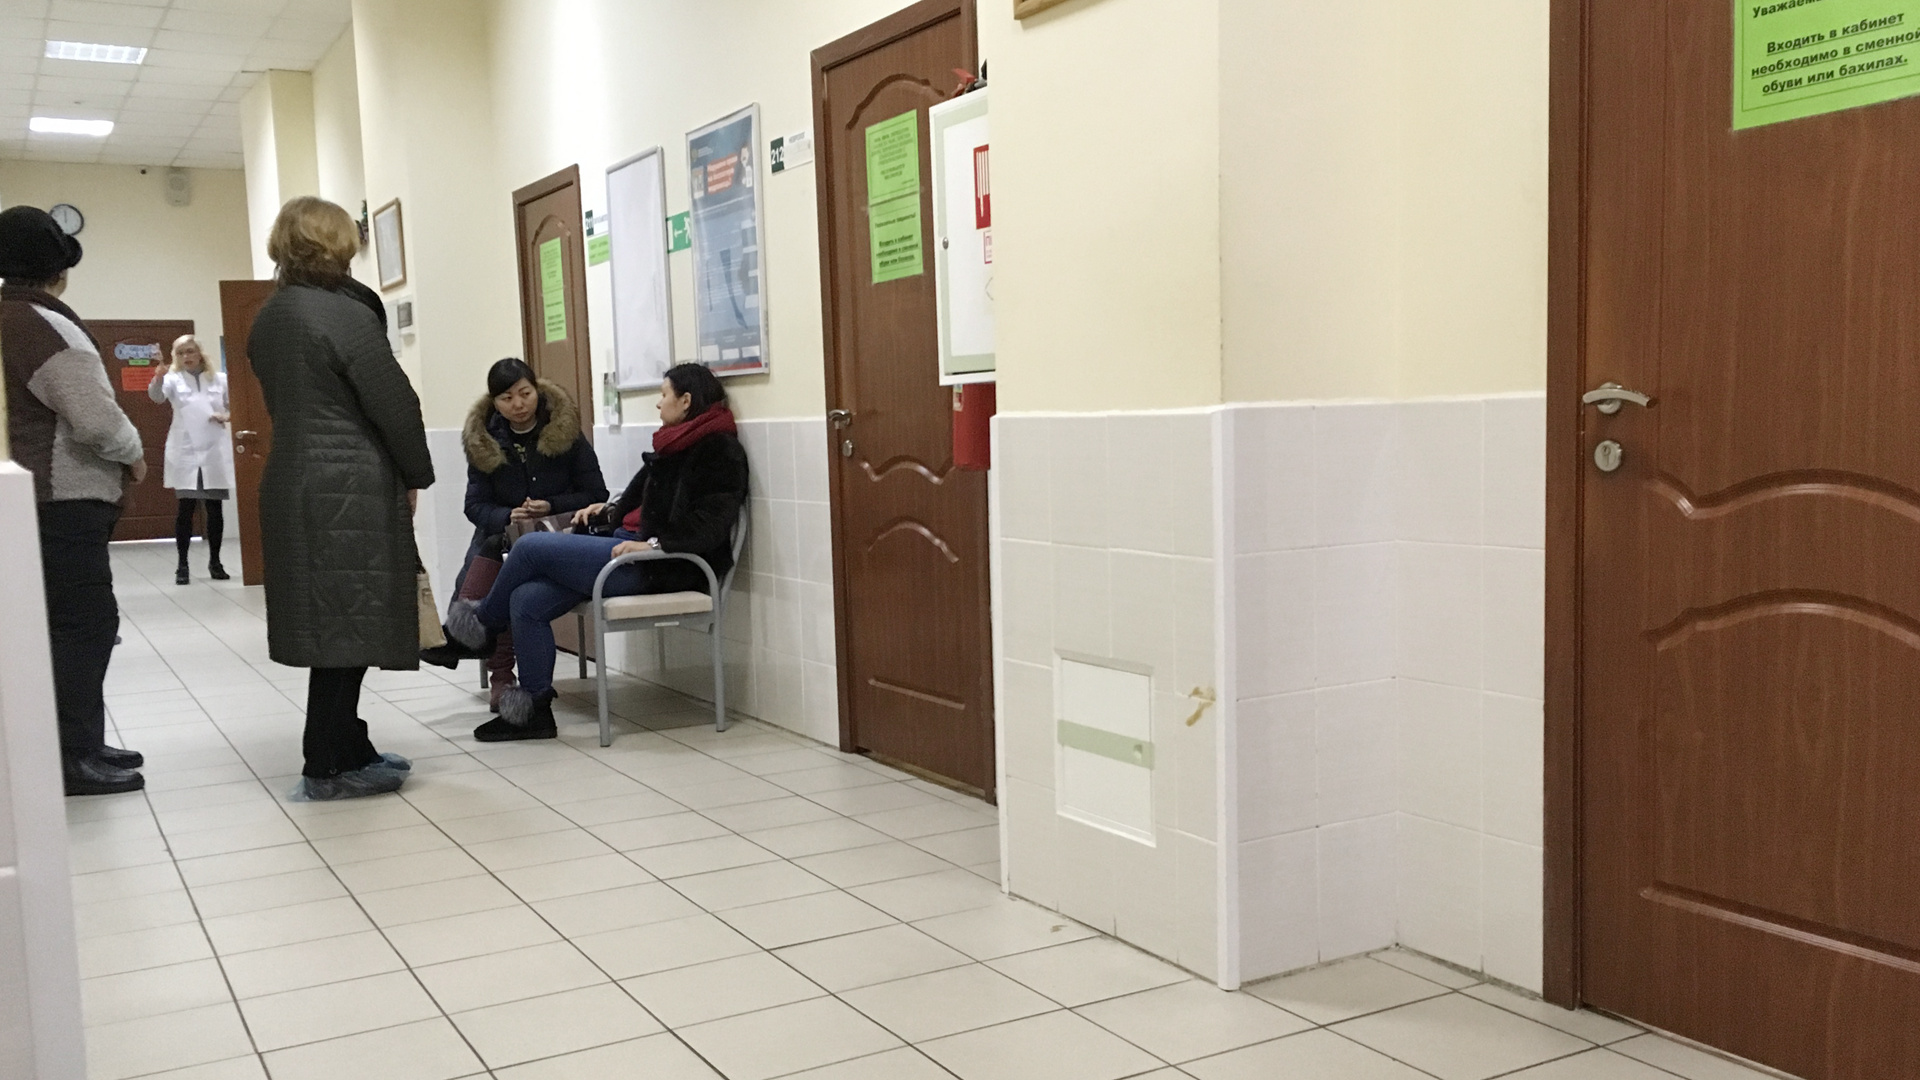 Ростовская область вошла в топ регионов с наибольшим числом жалоб от пациентов